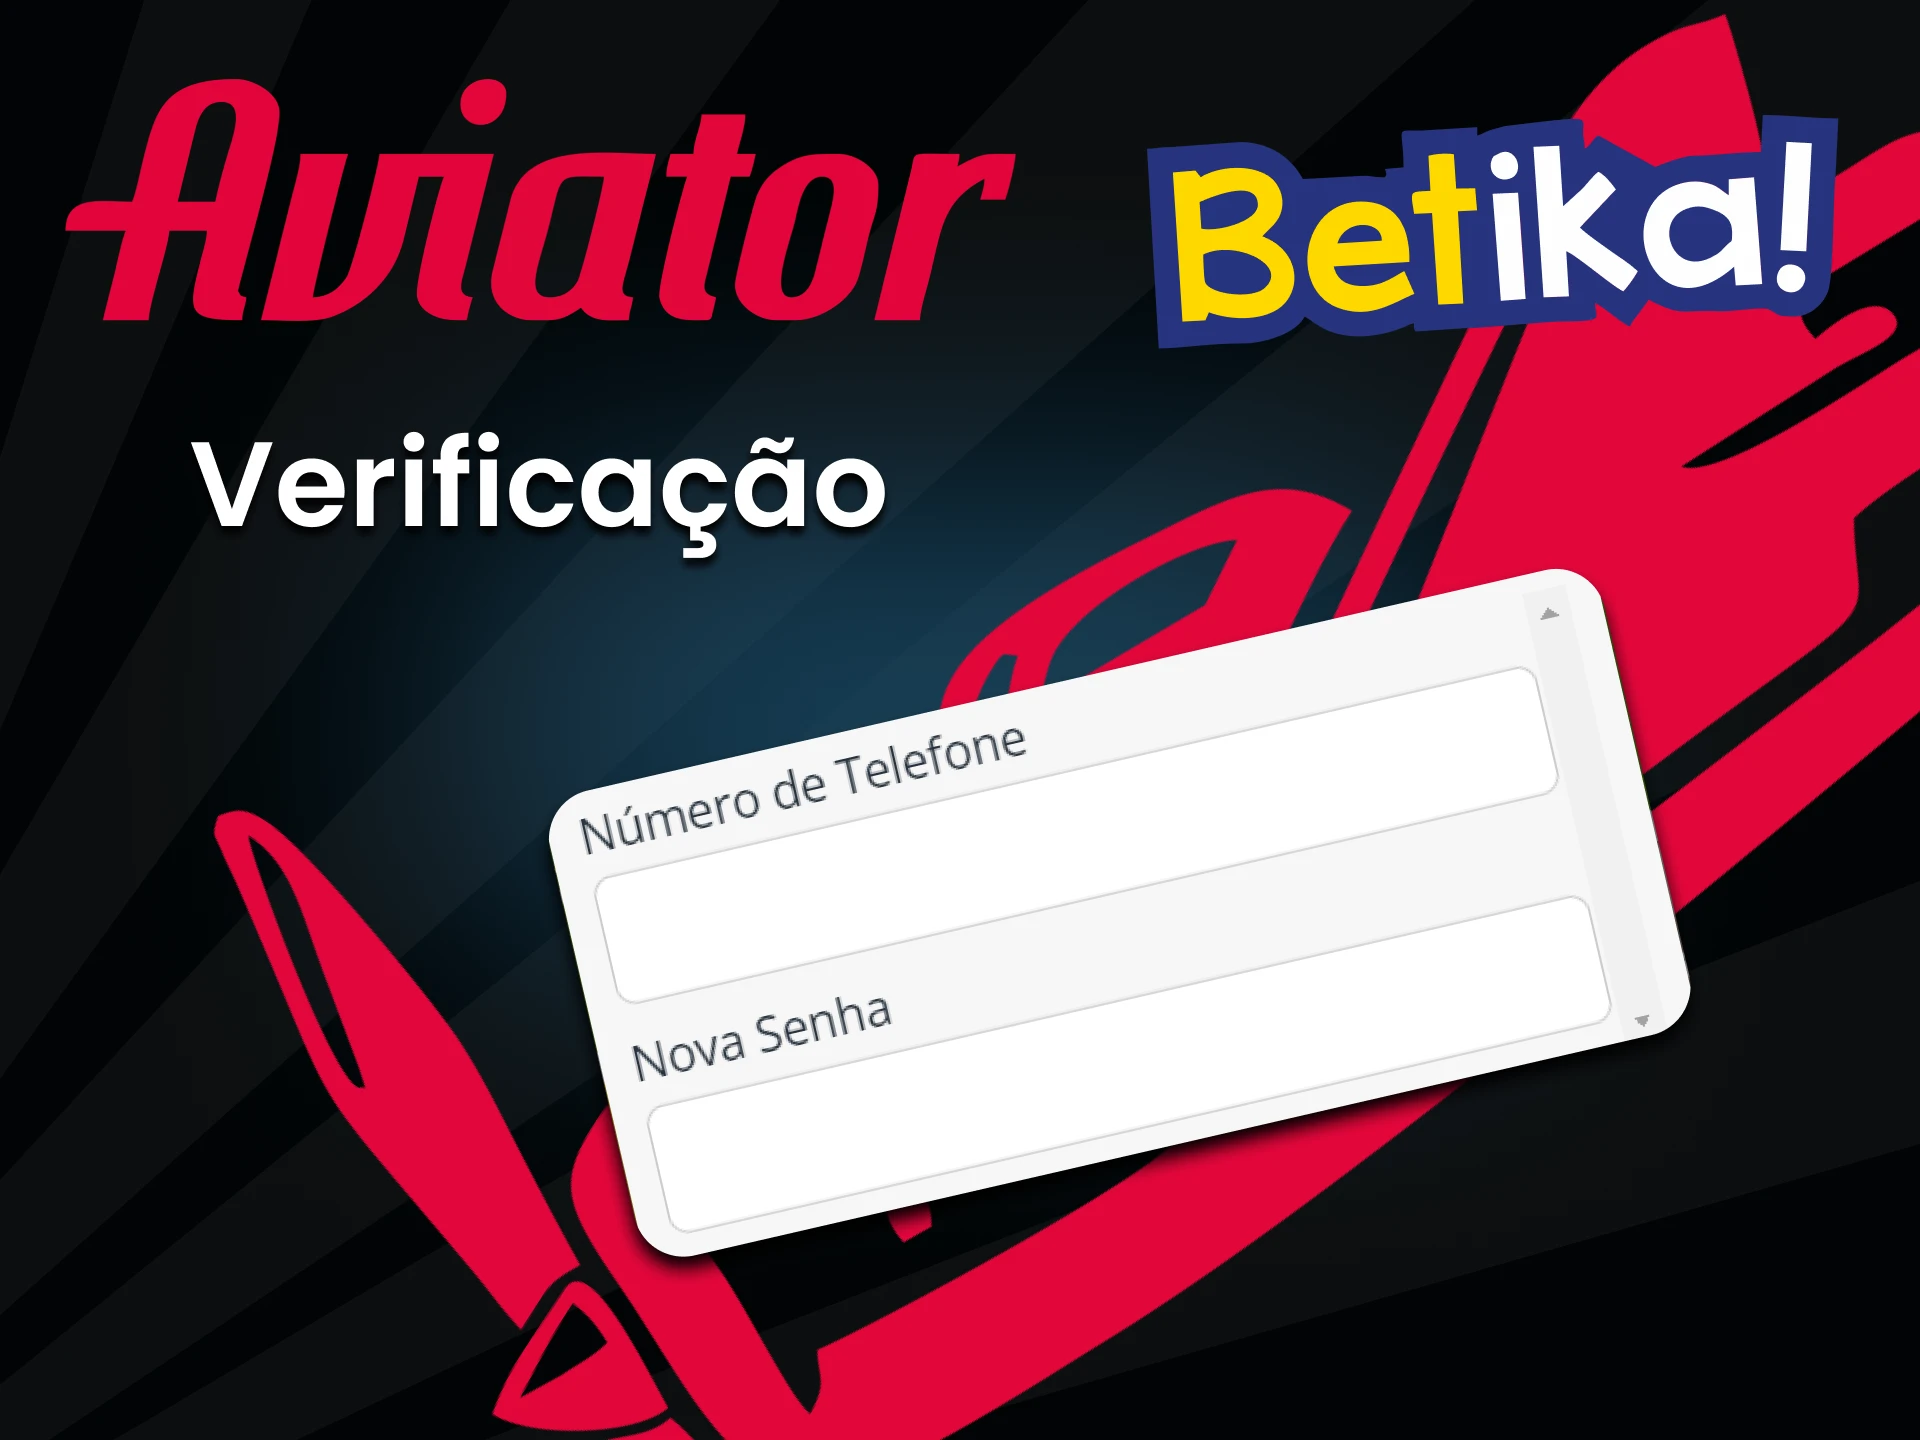 Para jogar Aviator, você precisa preencher os dados pessoais do Betika.